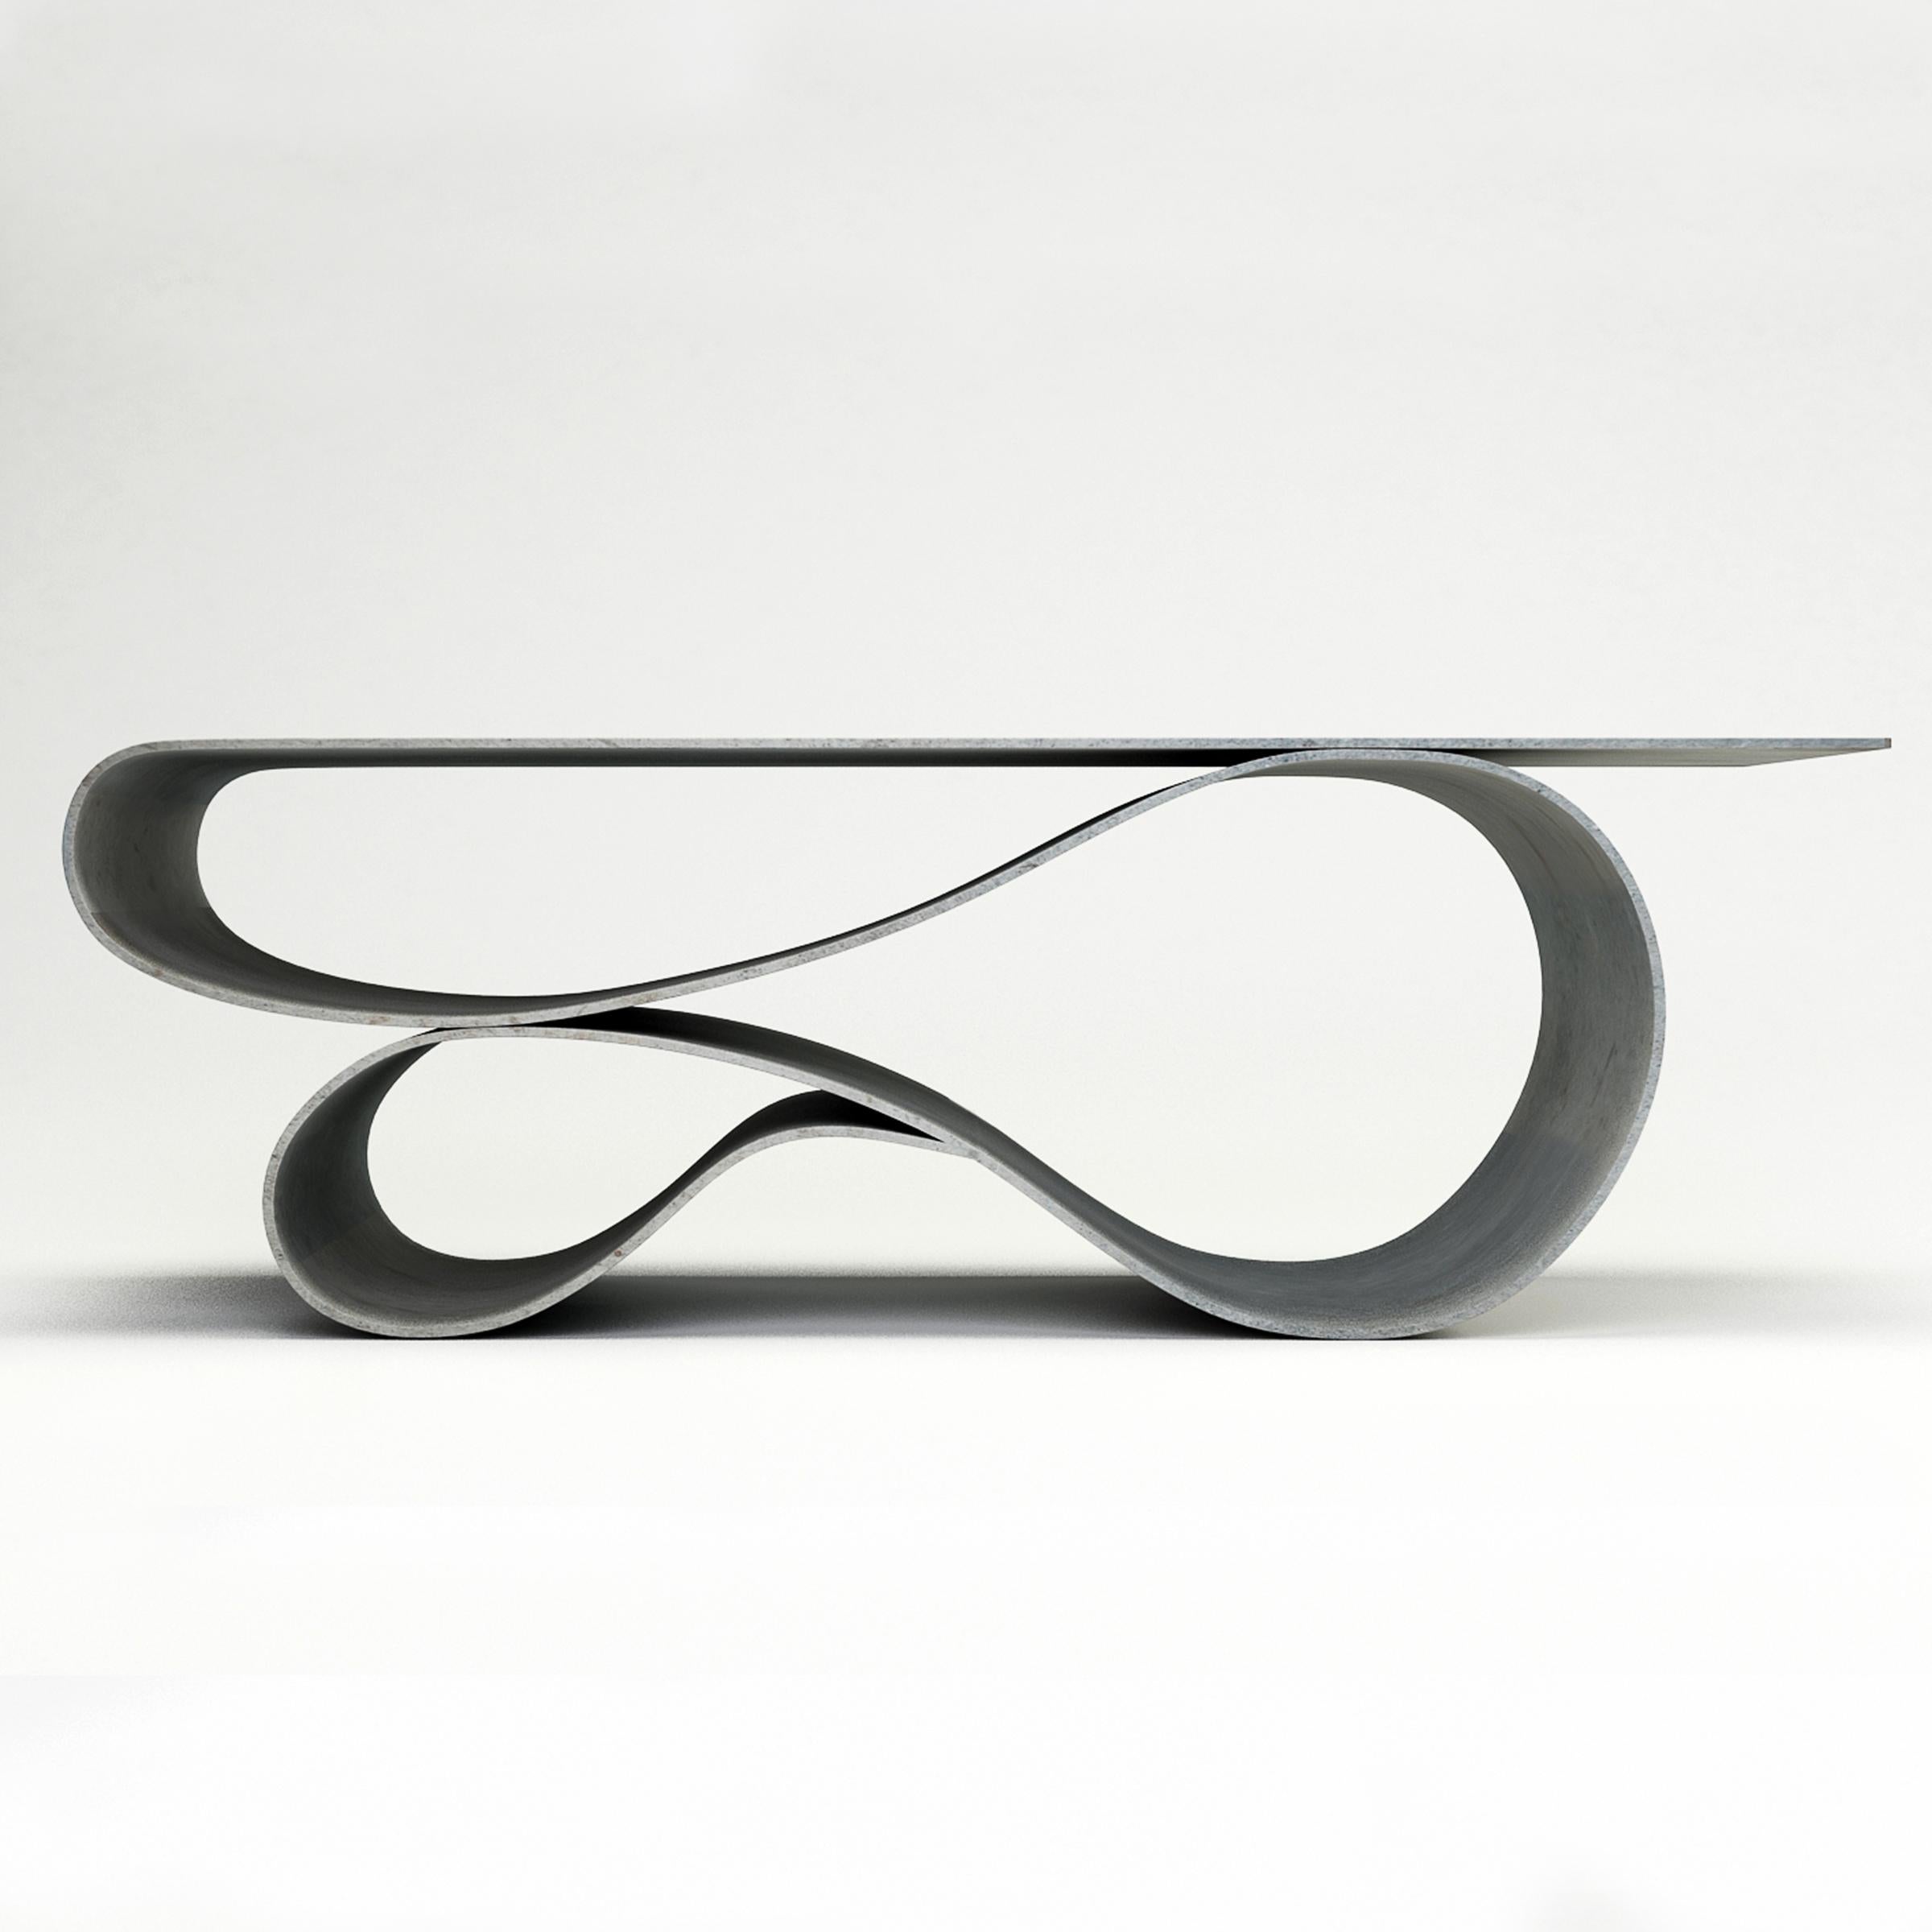 Table basse Whorl de Neal Aronowitz Design
Dimensions : D 61 x L 139,7 x H 45,7 cm
Matériaux : Mortier de ciment pigmenté, béton.
La taille, les couleurs et la finition peuvent être modifiées et personnalisées. 

La table basse Whorl est un